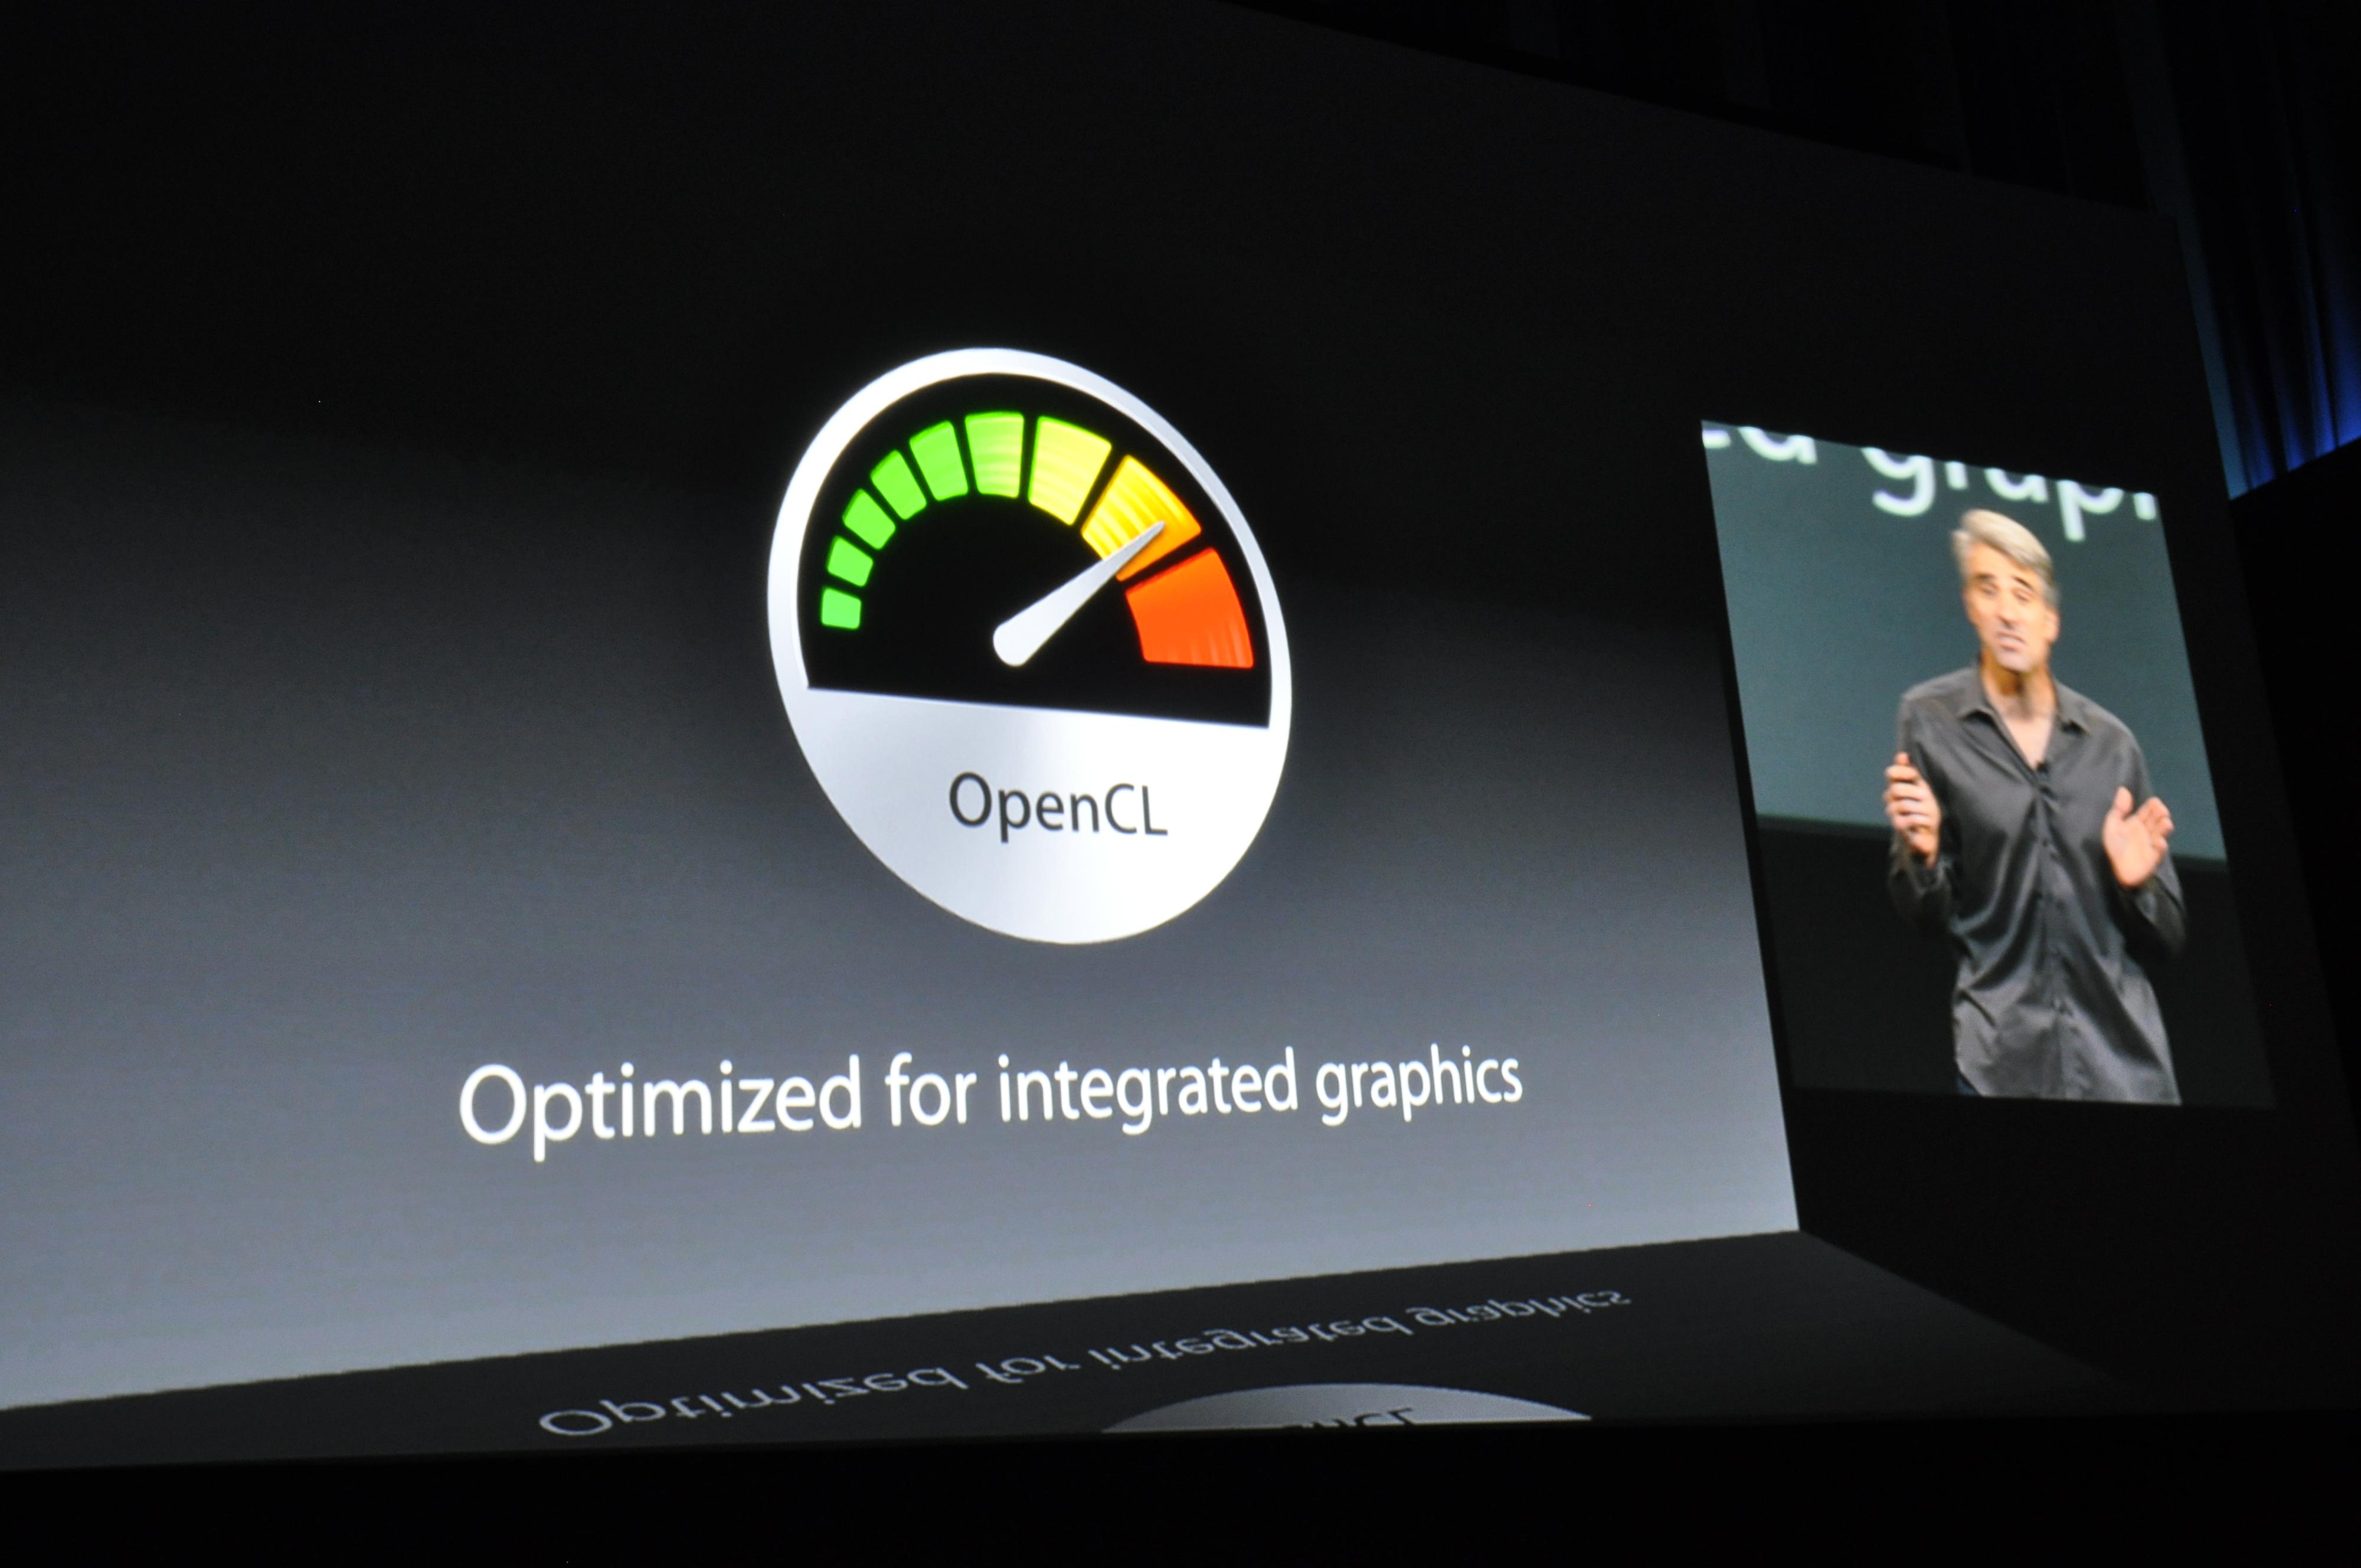 Nye OS X Mavericks har spesialtilpasninger for integrerte grafikkløsninger. Foto: Finn Jarle Kvalheim, Amobil.no